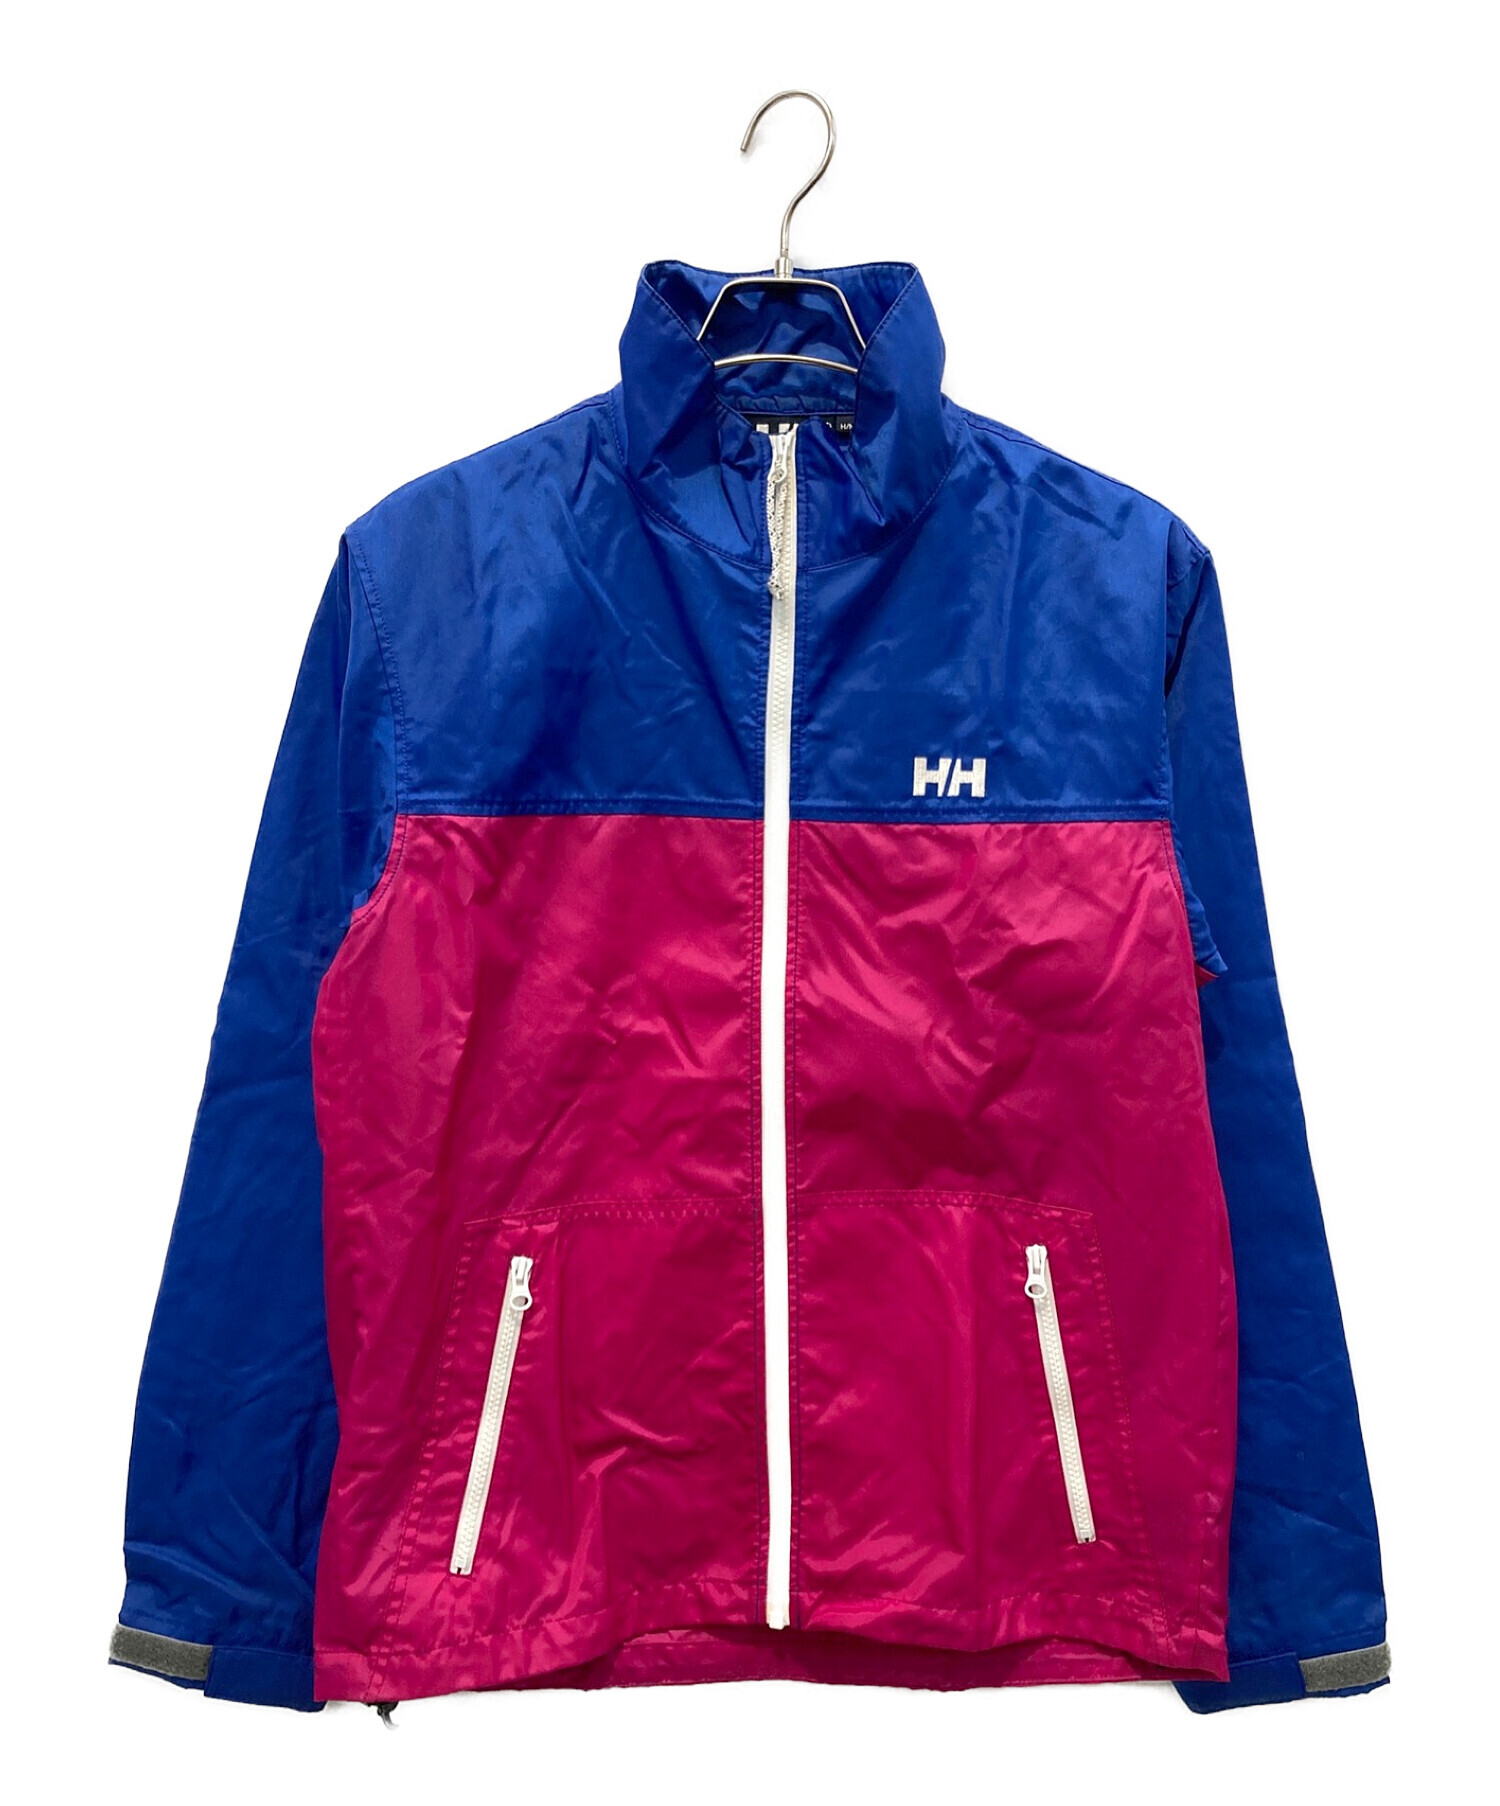 HELLY HANSEN (ヘリーハンセン) ナイロンジャケット ブルー×ピンク サイズ:M